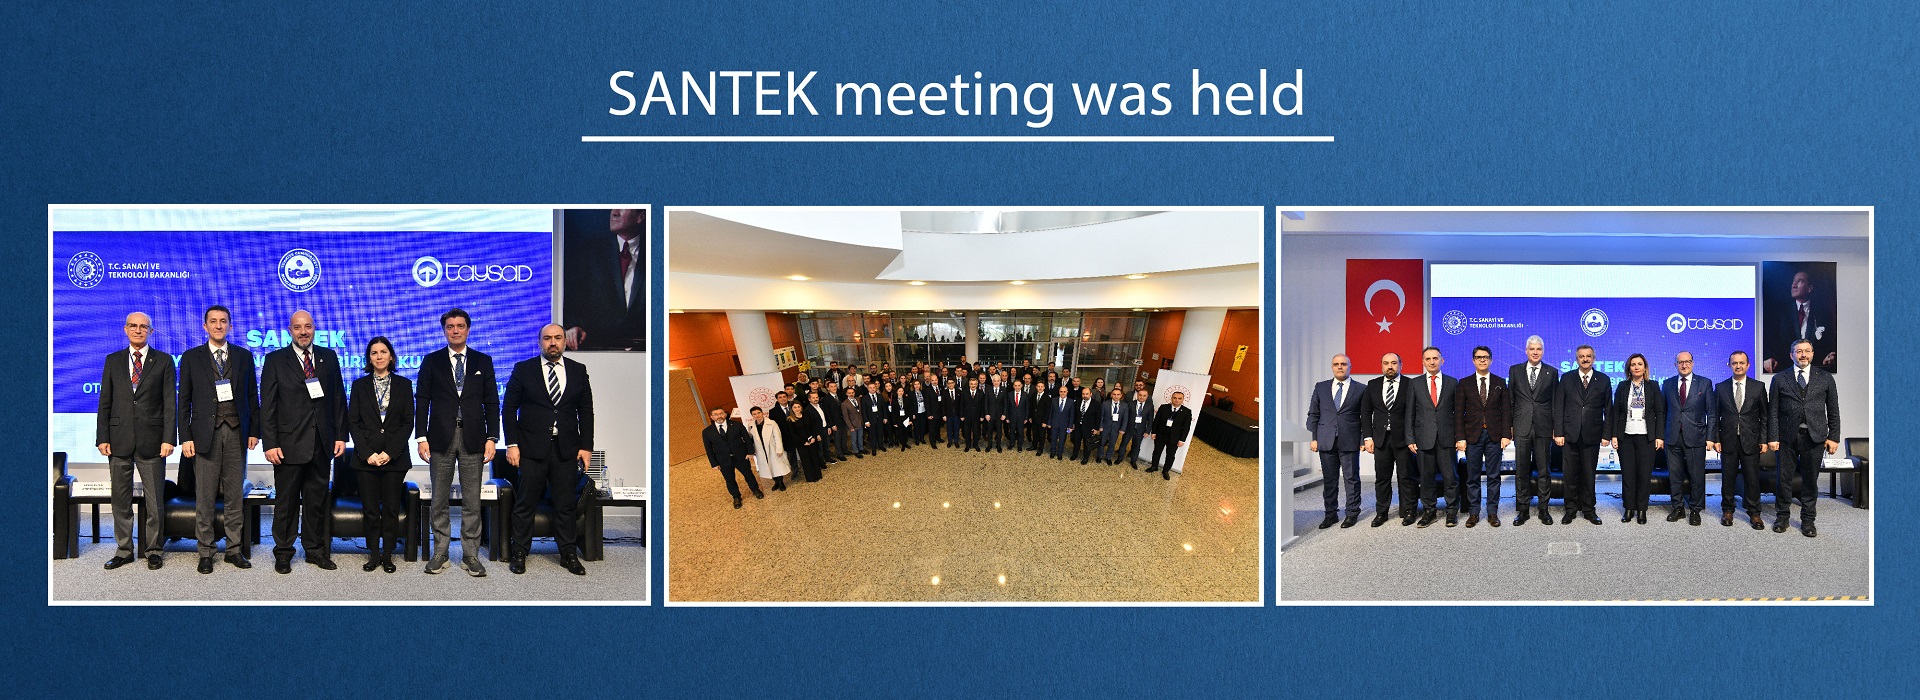 SANTEK Meeting Held